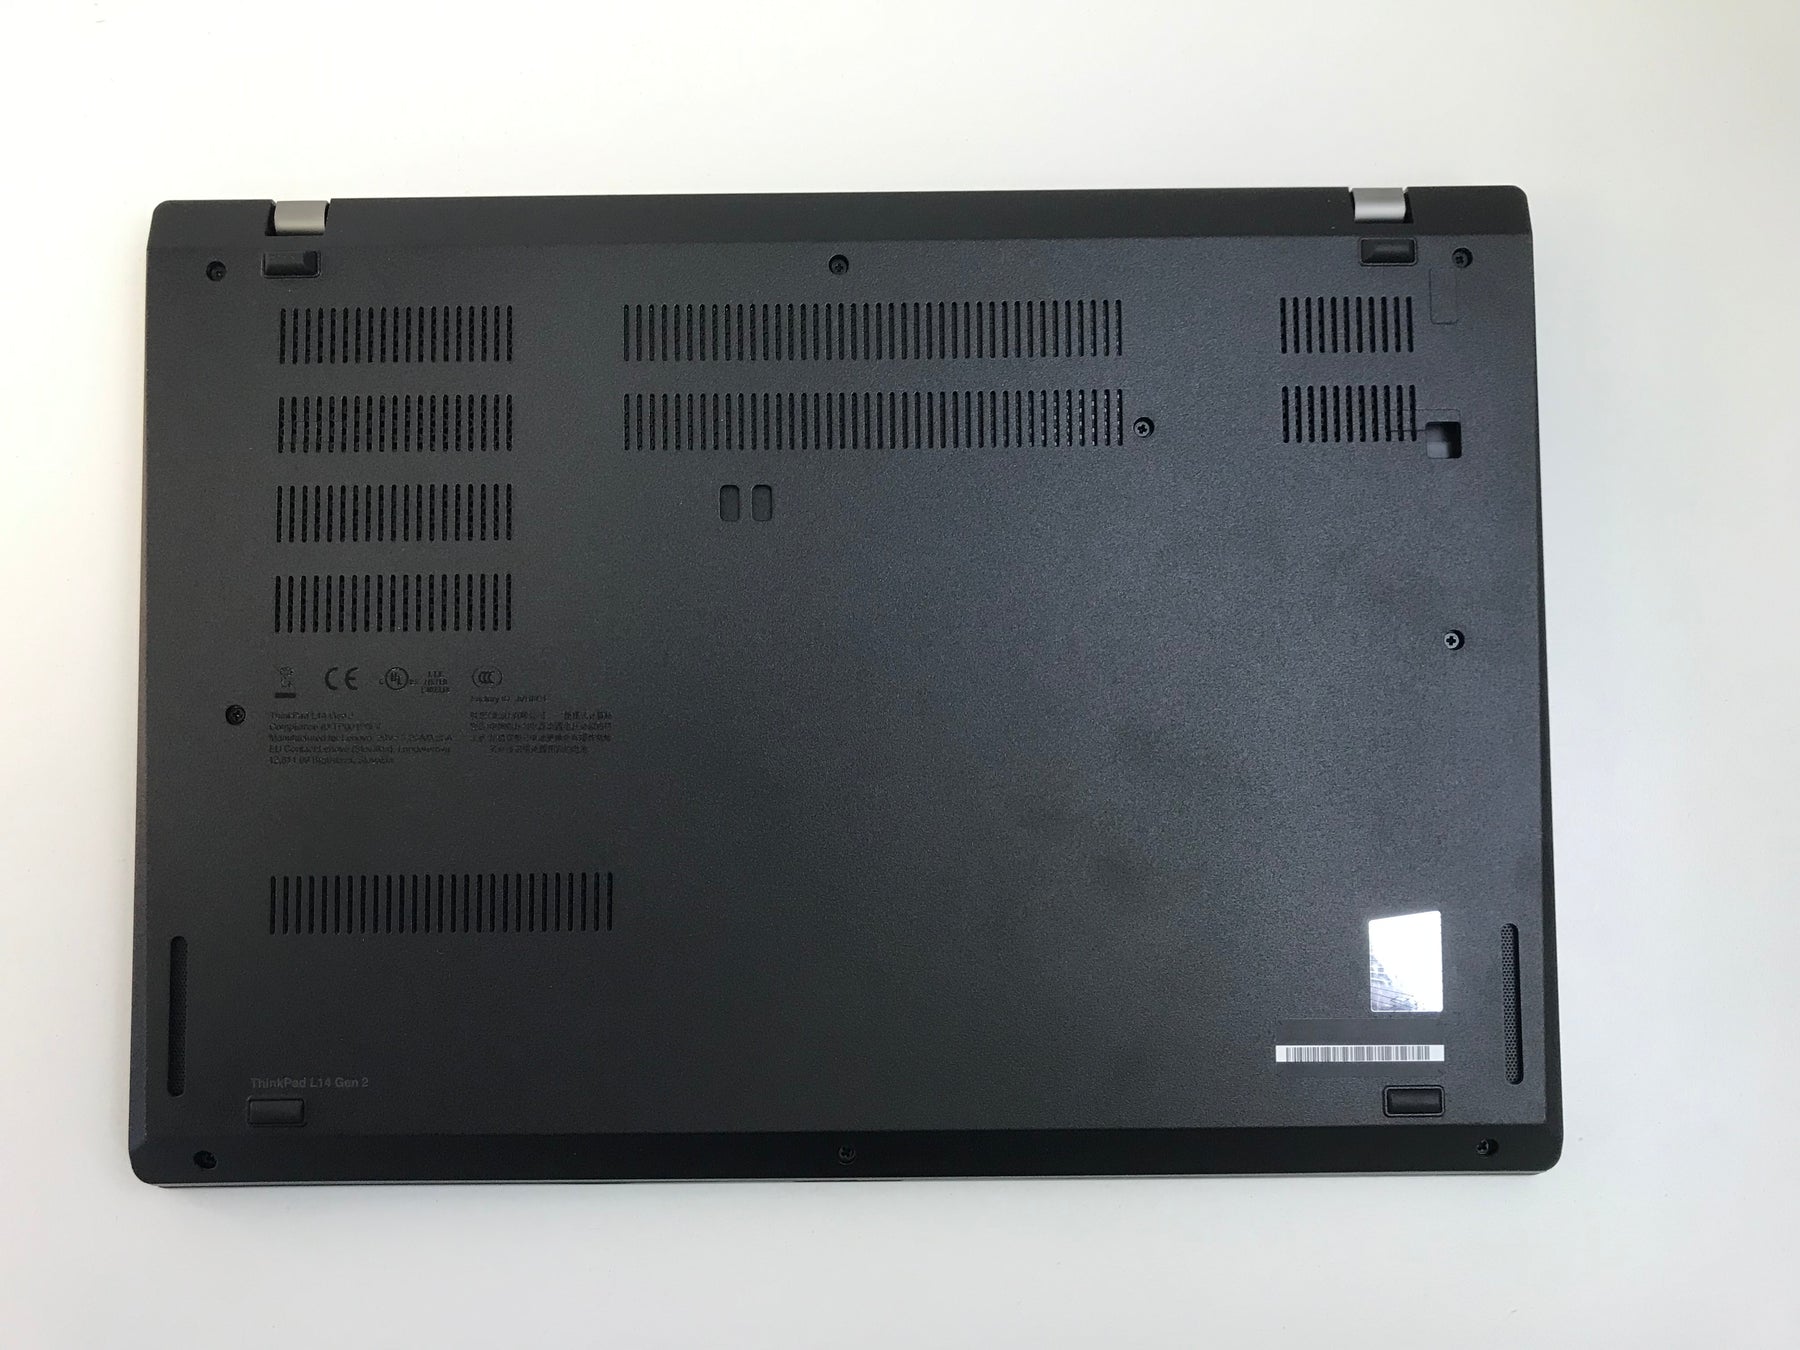 Lenovo ThinkPad L14 G2 20X5007BUS 14" Notebook - AMD R5 - 8GB RAM - 256GB SSD